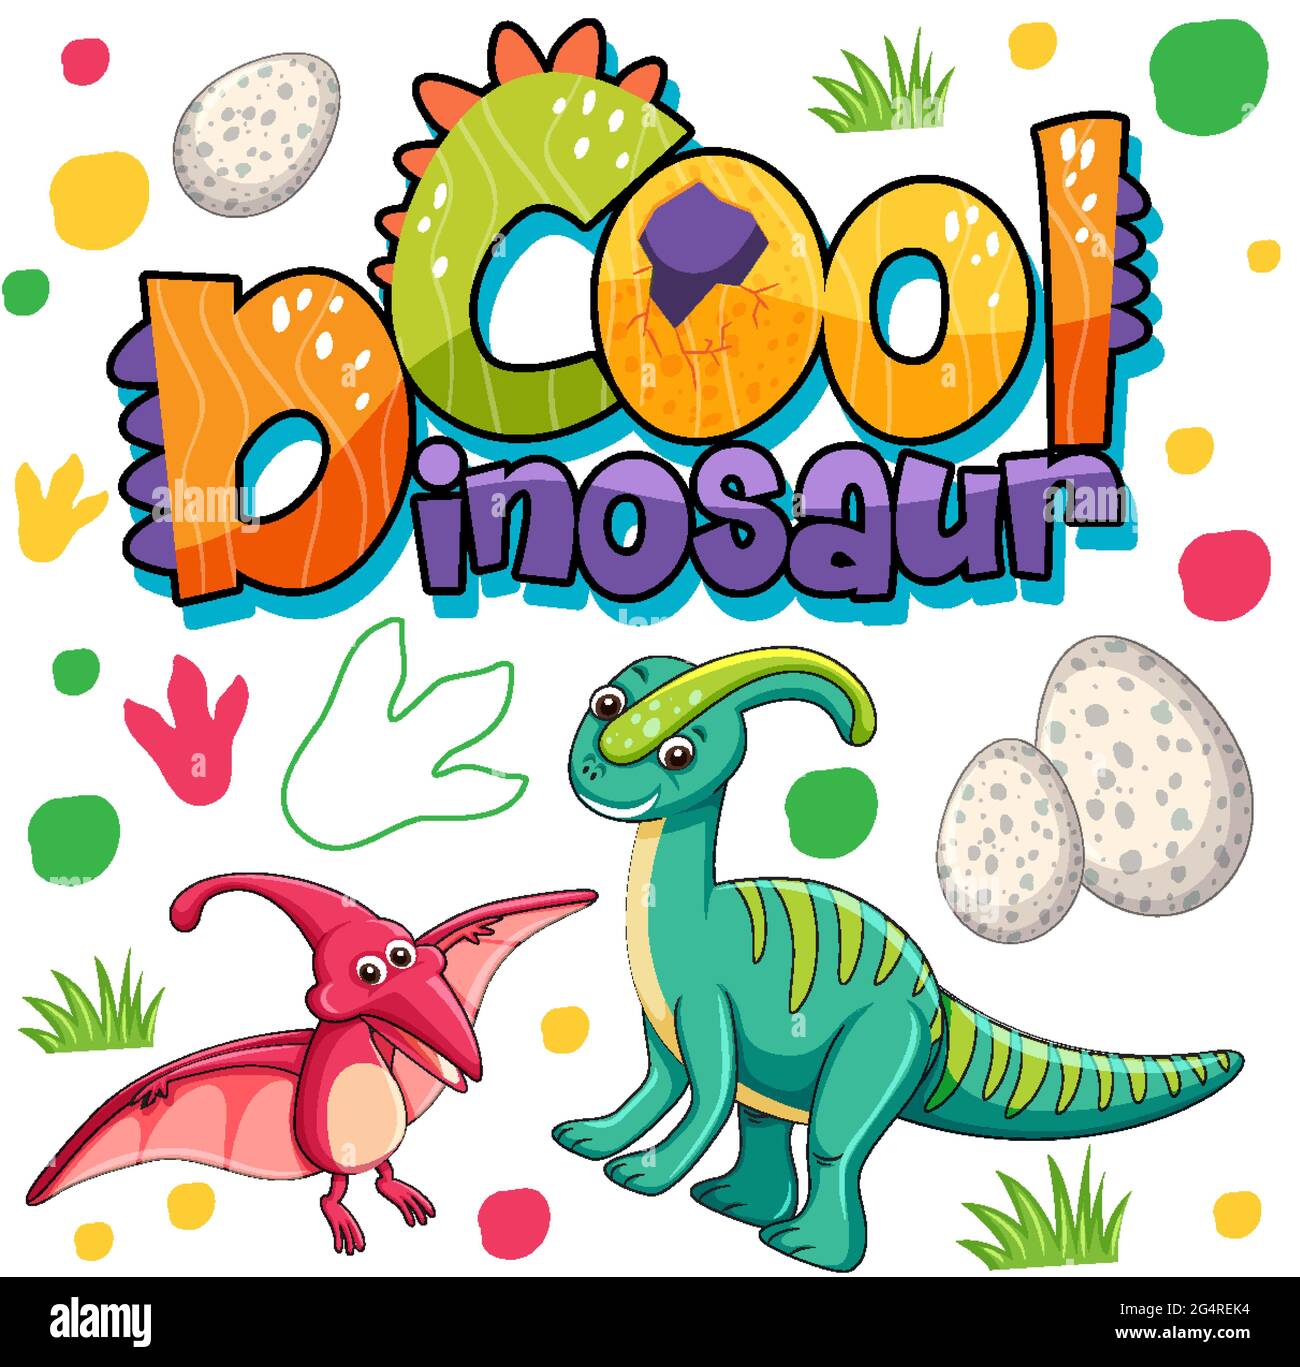 Simpatico personaggio dei cartoni animati dinosauri con design dei  caratteri per la parola Cool Dinosaur illustrazione Immagine e Vettoriale -  Alamy